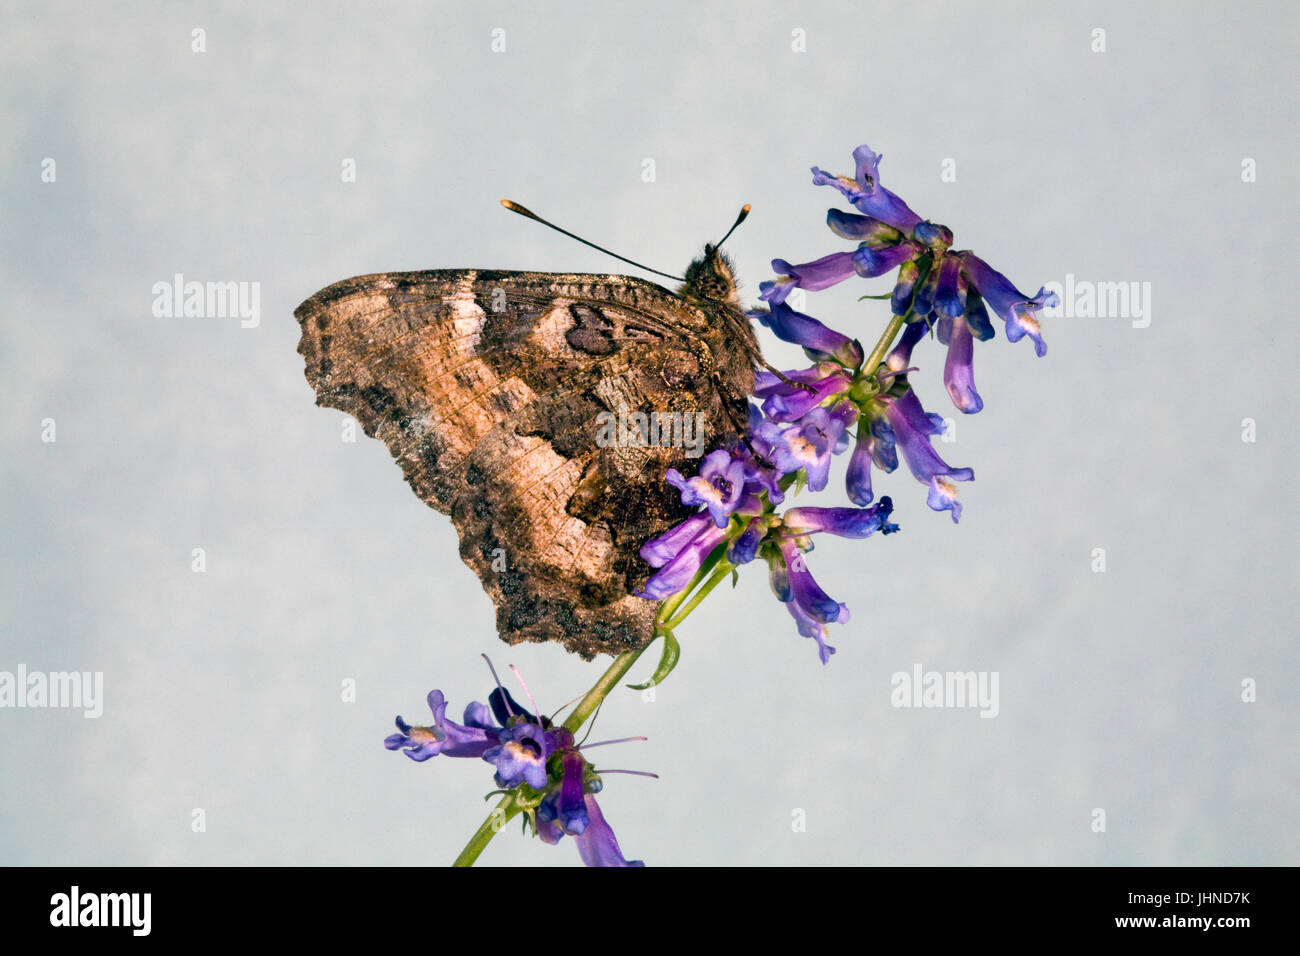 Un Tortiseshell Californie Papillon, également connu sous le nom de Western Tortue, Nymphalis californica, à la recherche de nectar dans une indian paintbrush wildf Banque D'Images